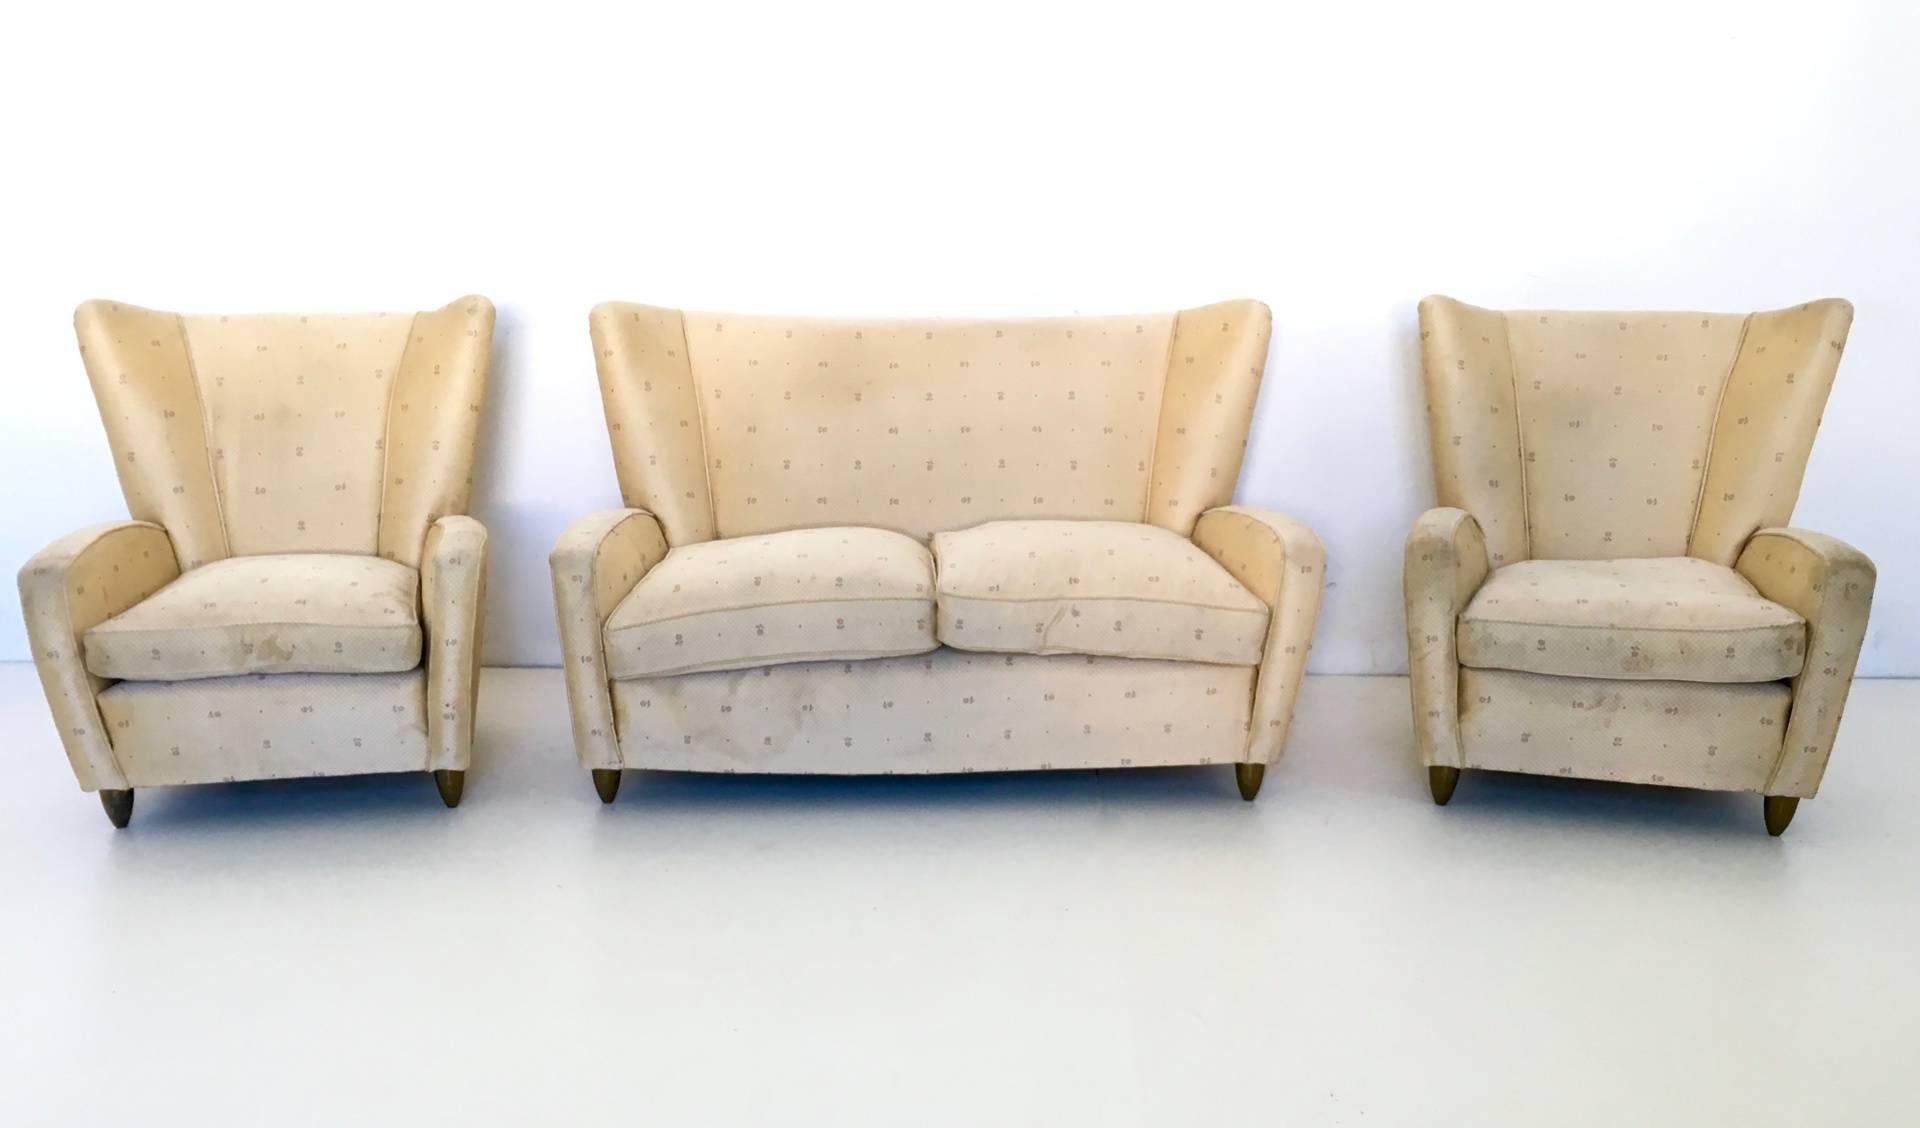 Fabriqué en Italie, années 1950.
Cet ensemble est très particulier et intéressant car le canapé et les fauteuils sont dotés de pieds coniques en laiton vintage.
Leur tissu est d'origine et, comme vous pouvez le constater, ils ont besoin d'être